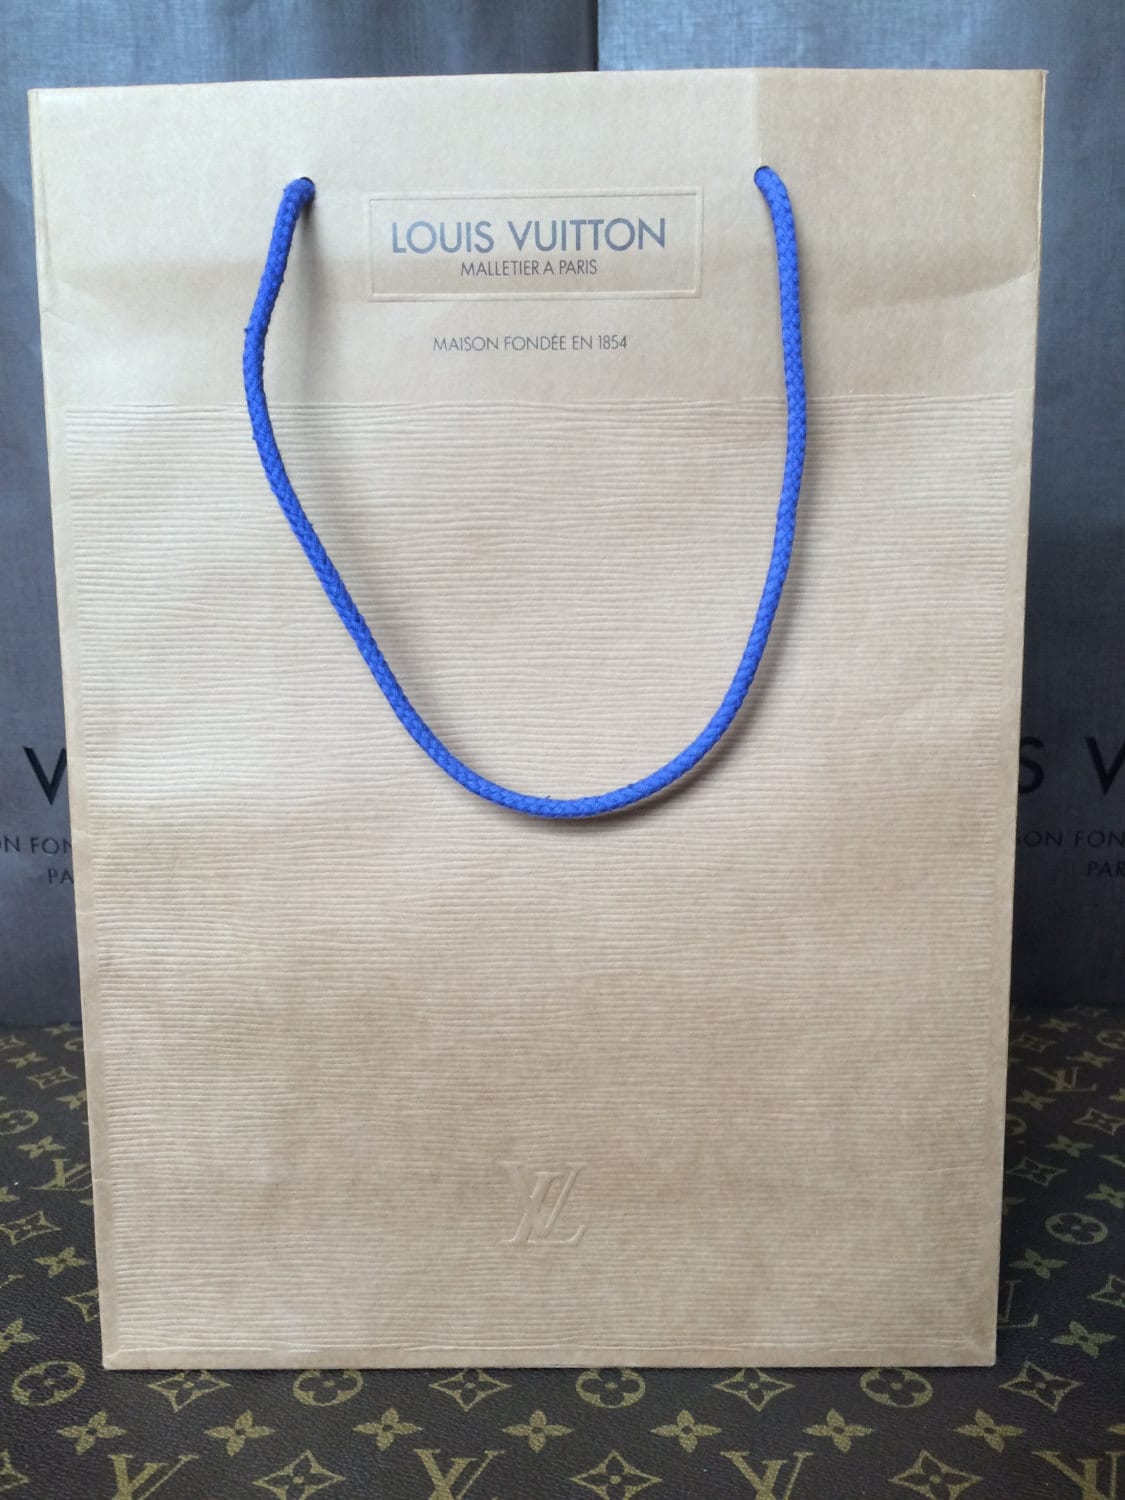 Vintage Louis Vuitton Paper Shopping Bags